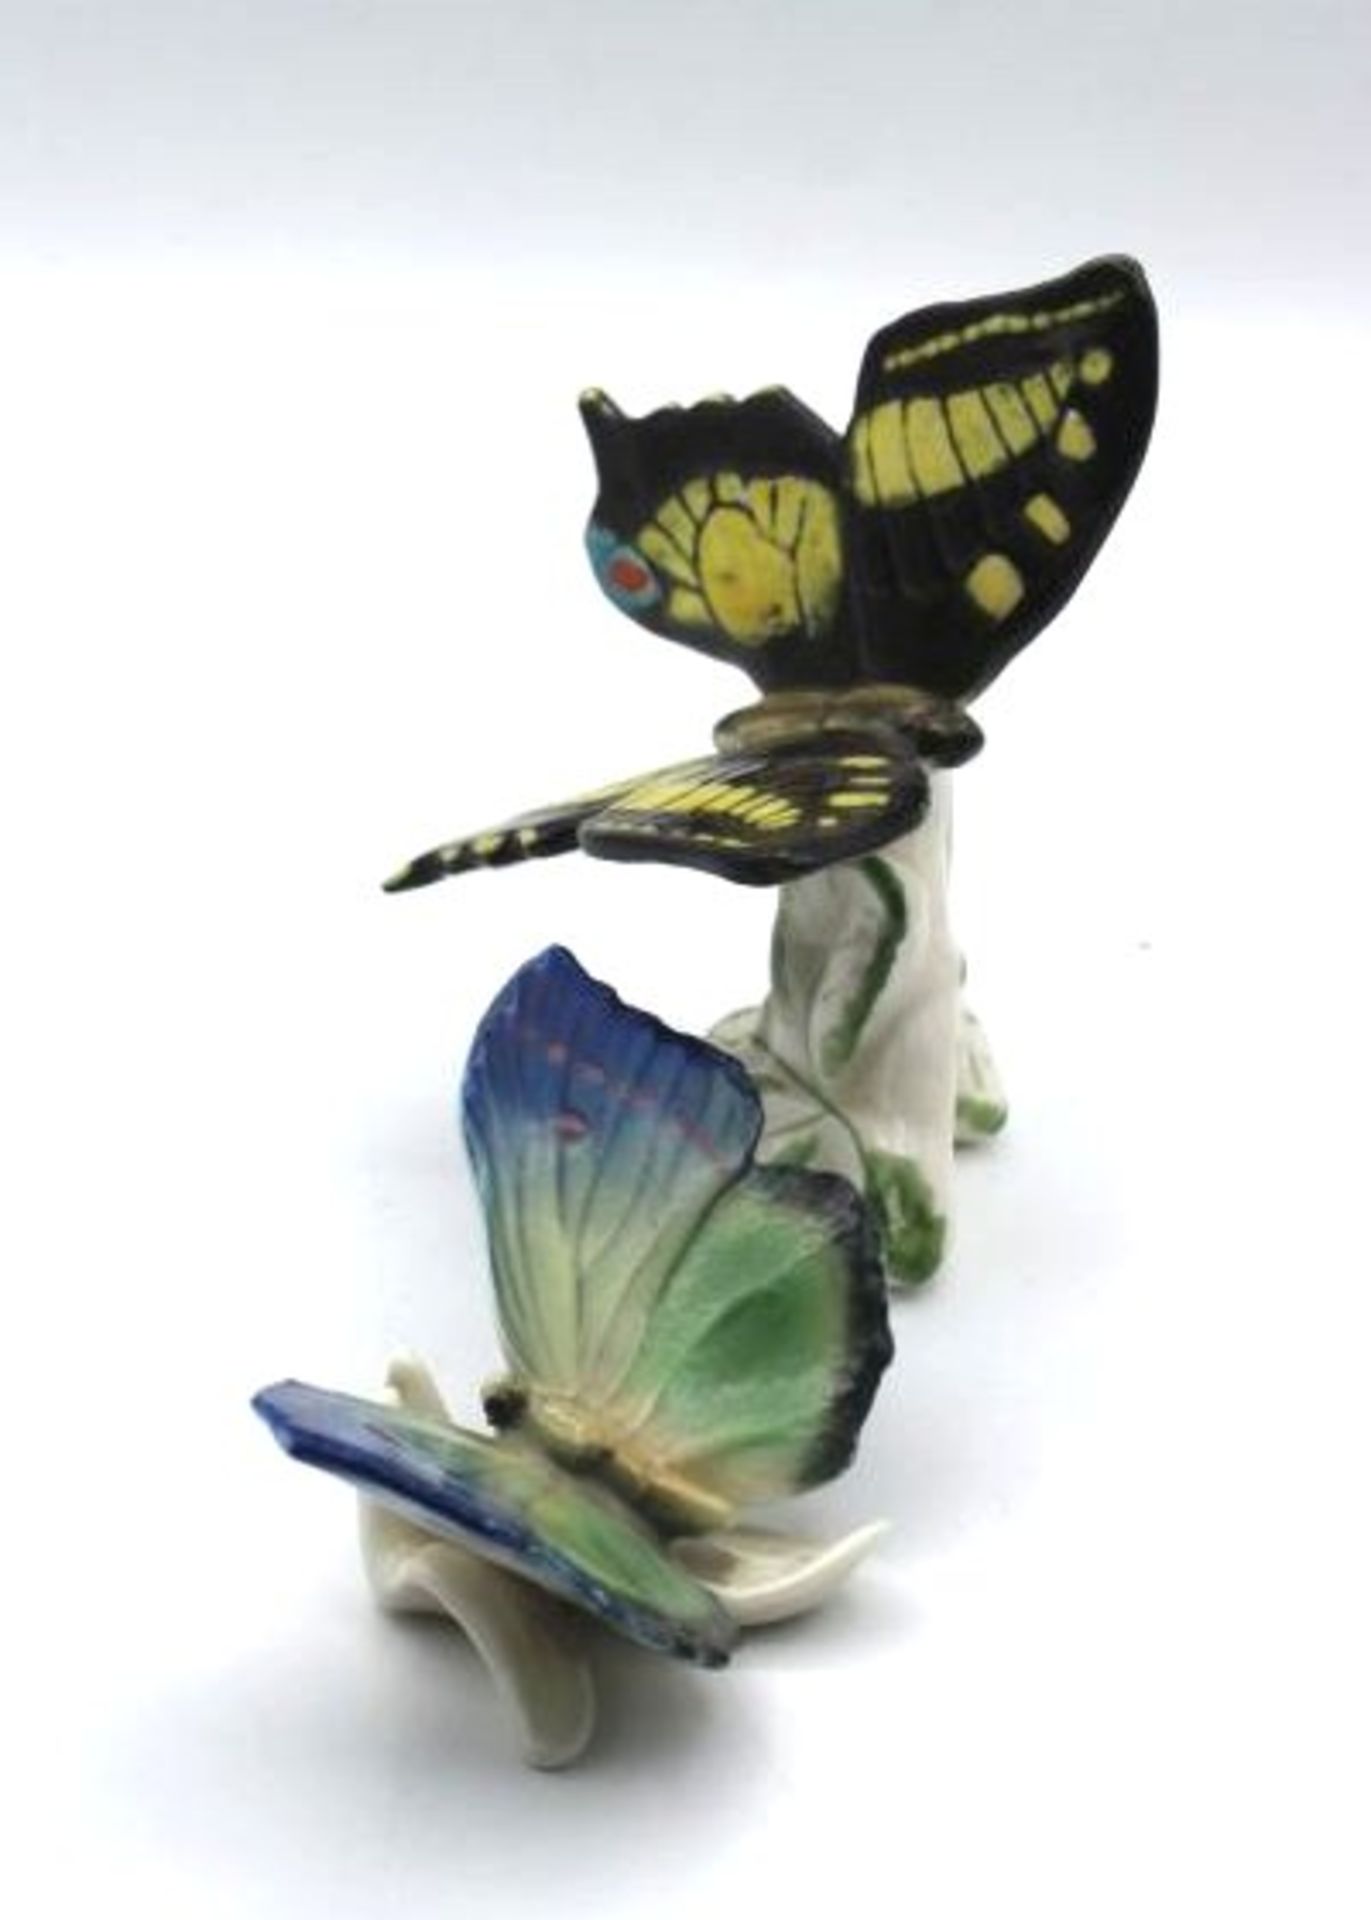 2x Schmetterlinge, ENS, Mühlenmarke,polychr. Bemalung in Unterglasurfarben, H-9cm und H-4cm. - Bild 2 aus 3